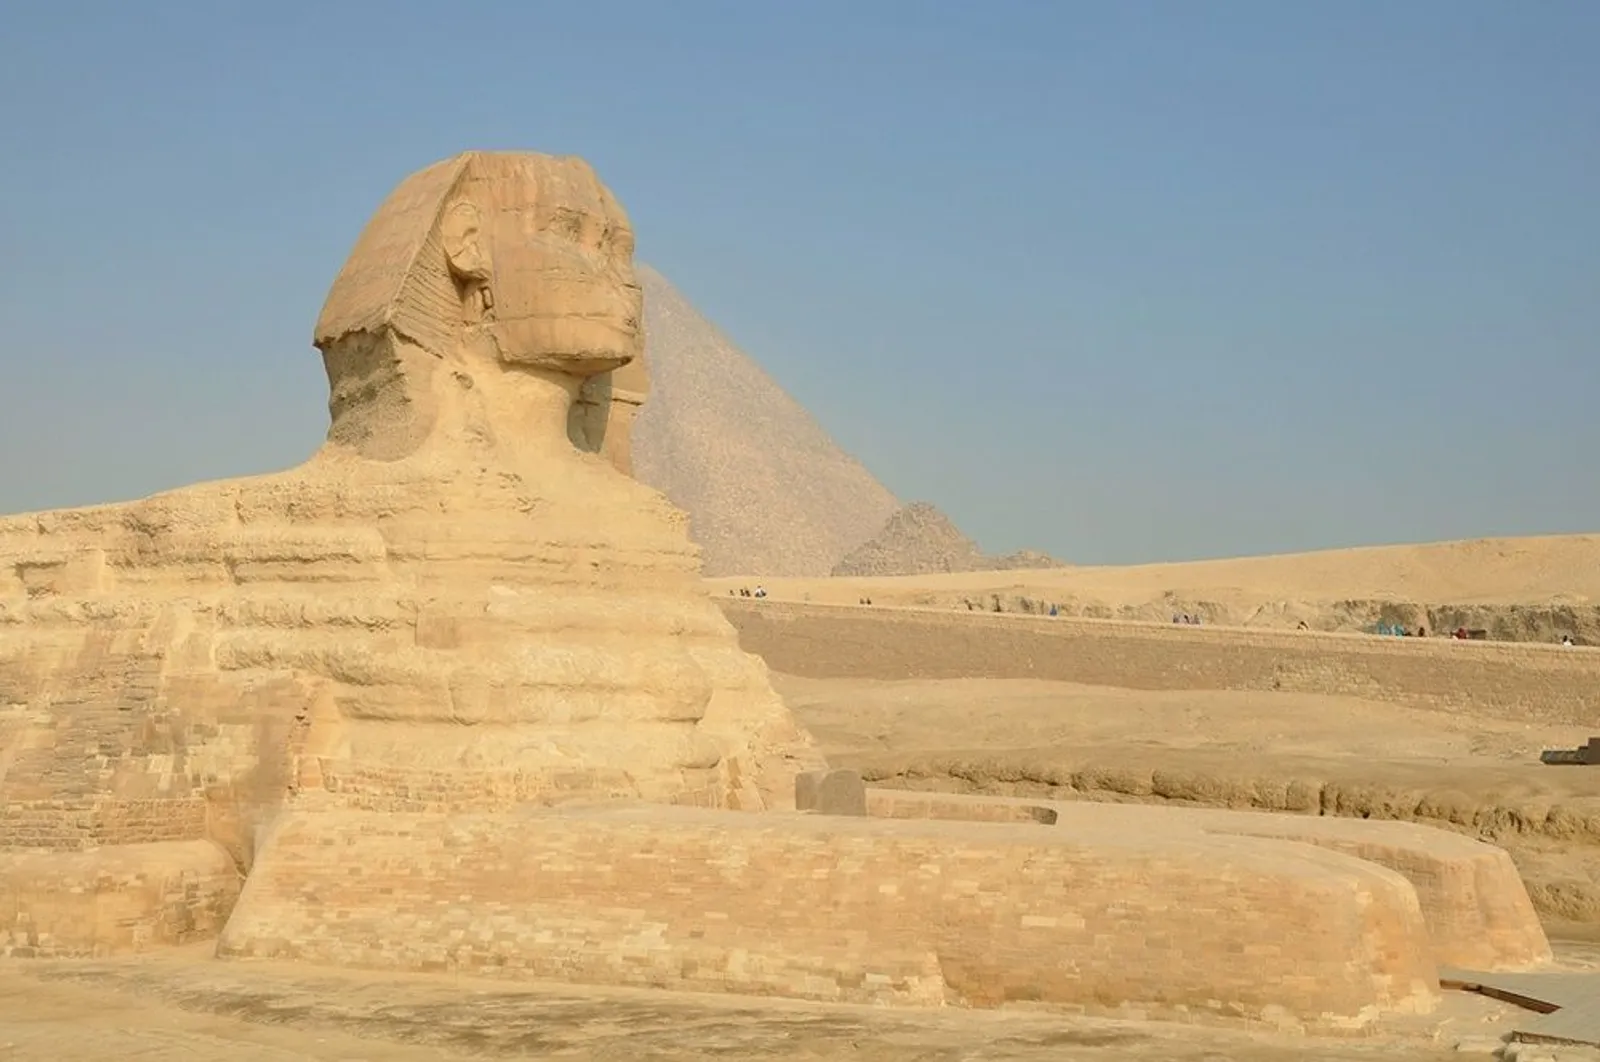 Banyak Tempat Wisata, Mesir Menjadi Negara dengan Pertumbuhan Tercepat